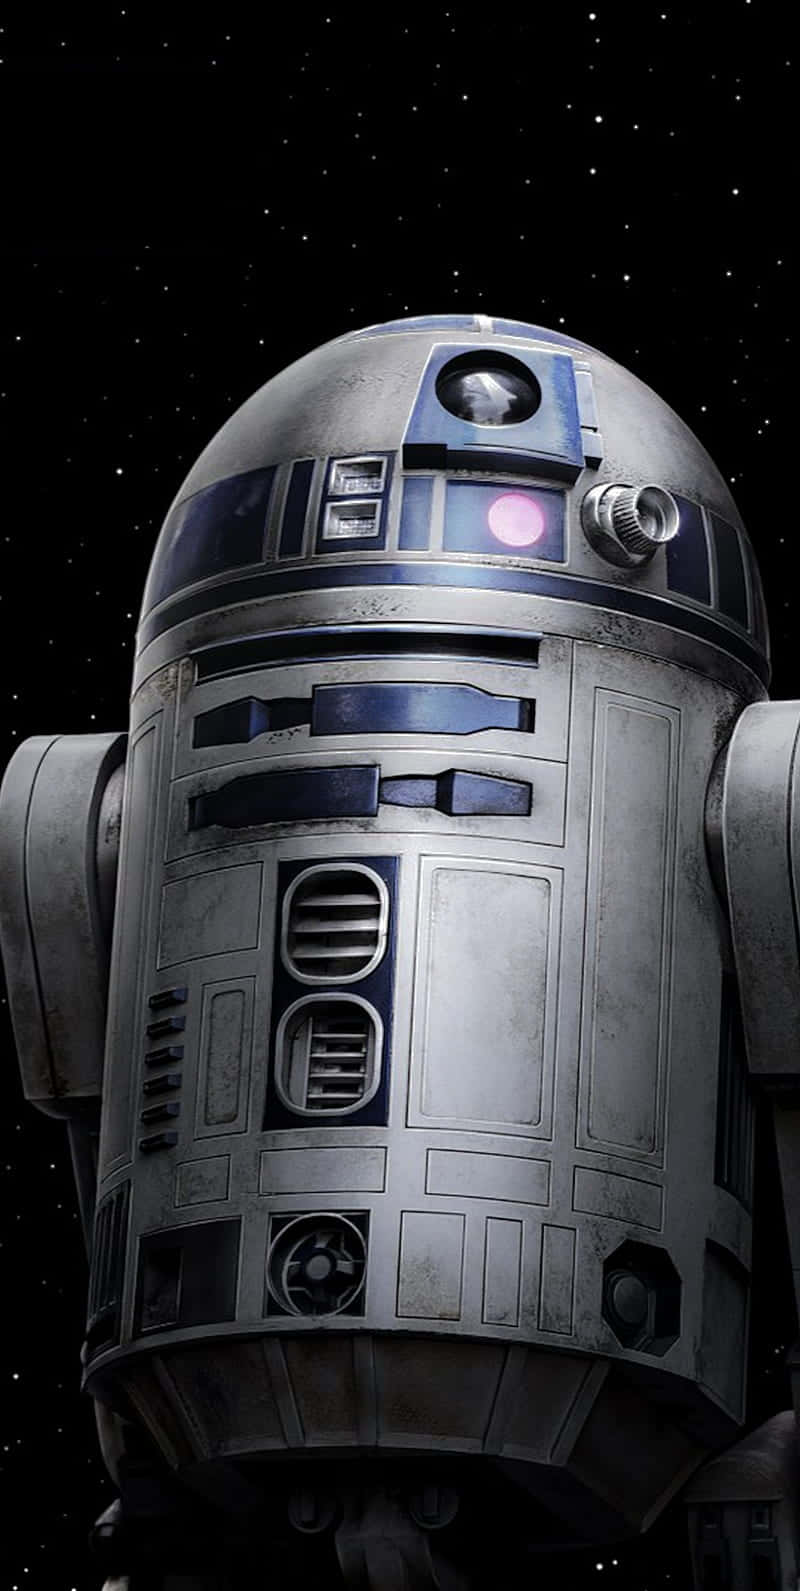 R2D2, den ikoniske droid fra Star Wars univers, kigger ud fra denne hvide og blå tapet. Wallpaper